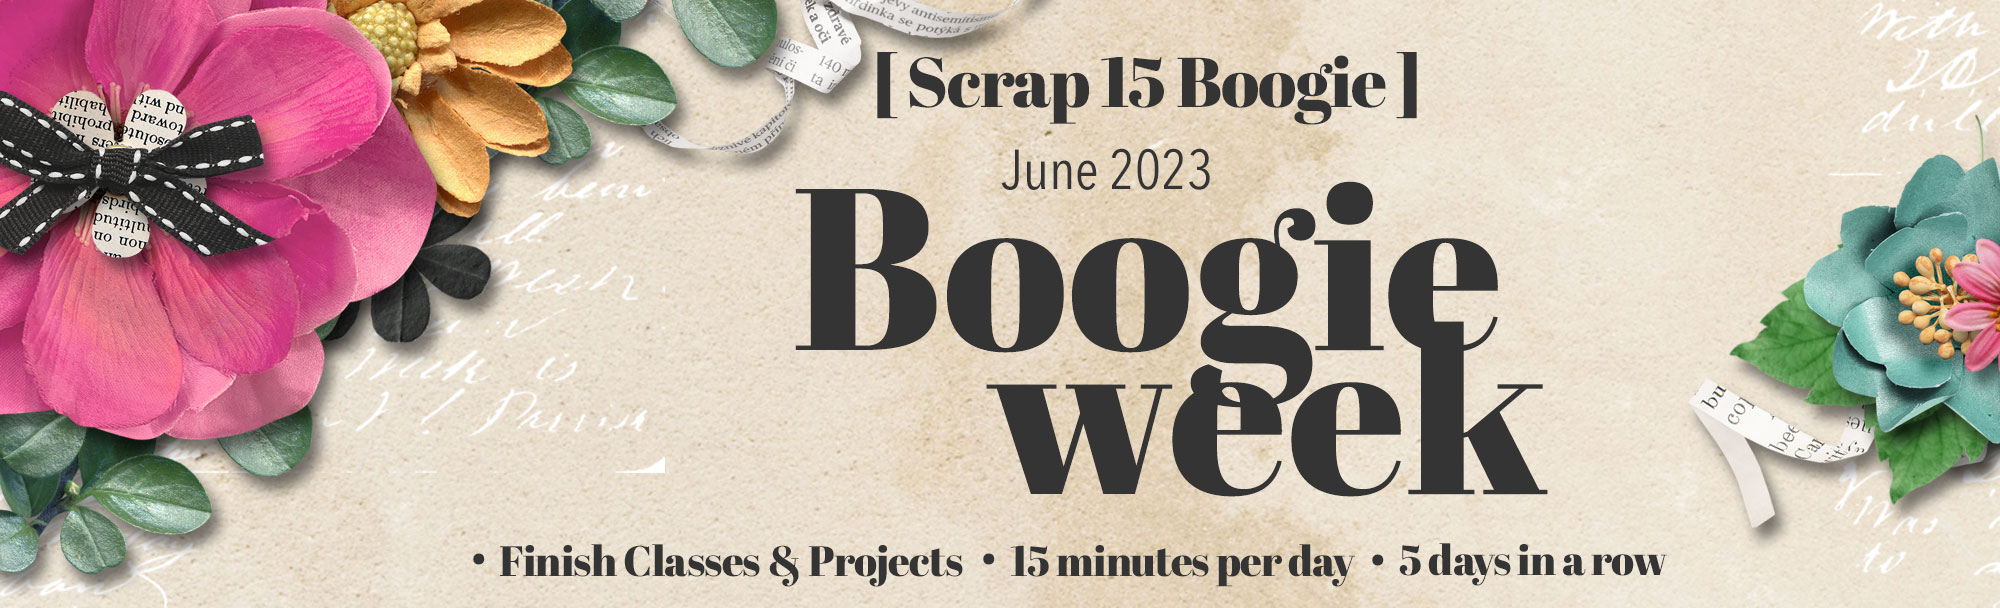 Boogie Week June 2023